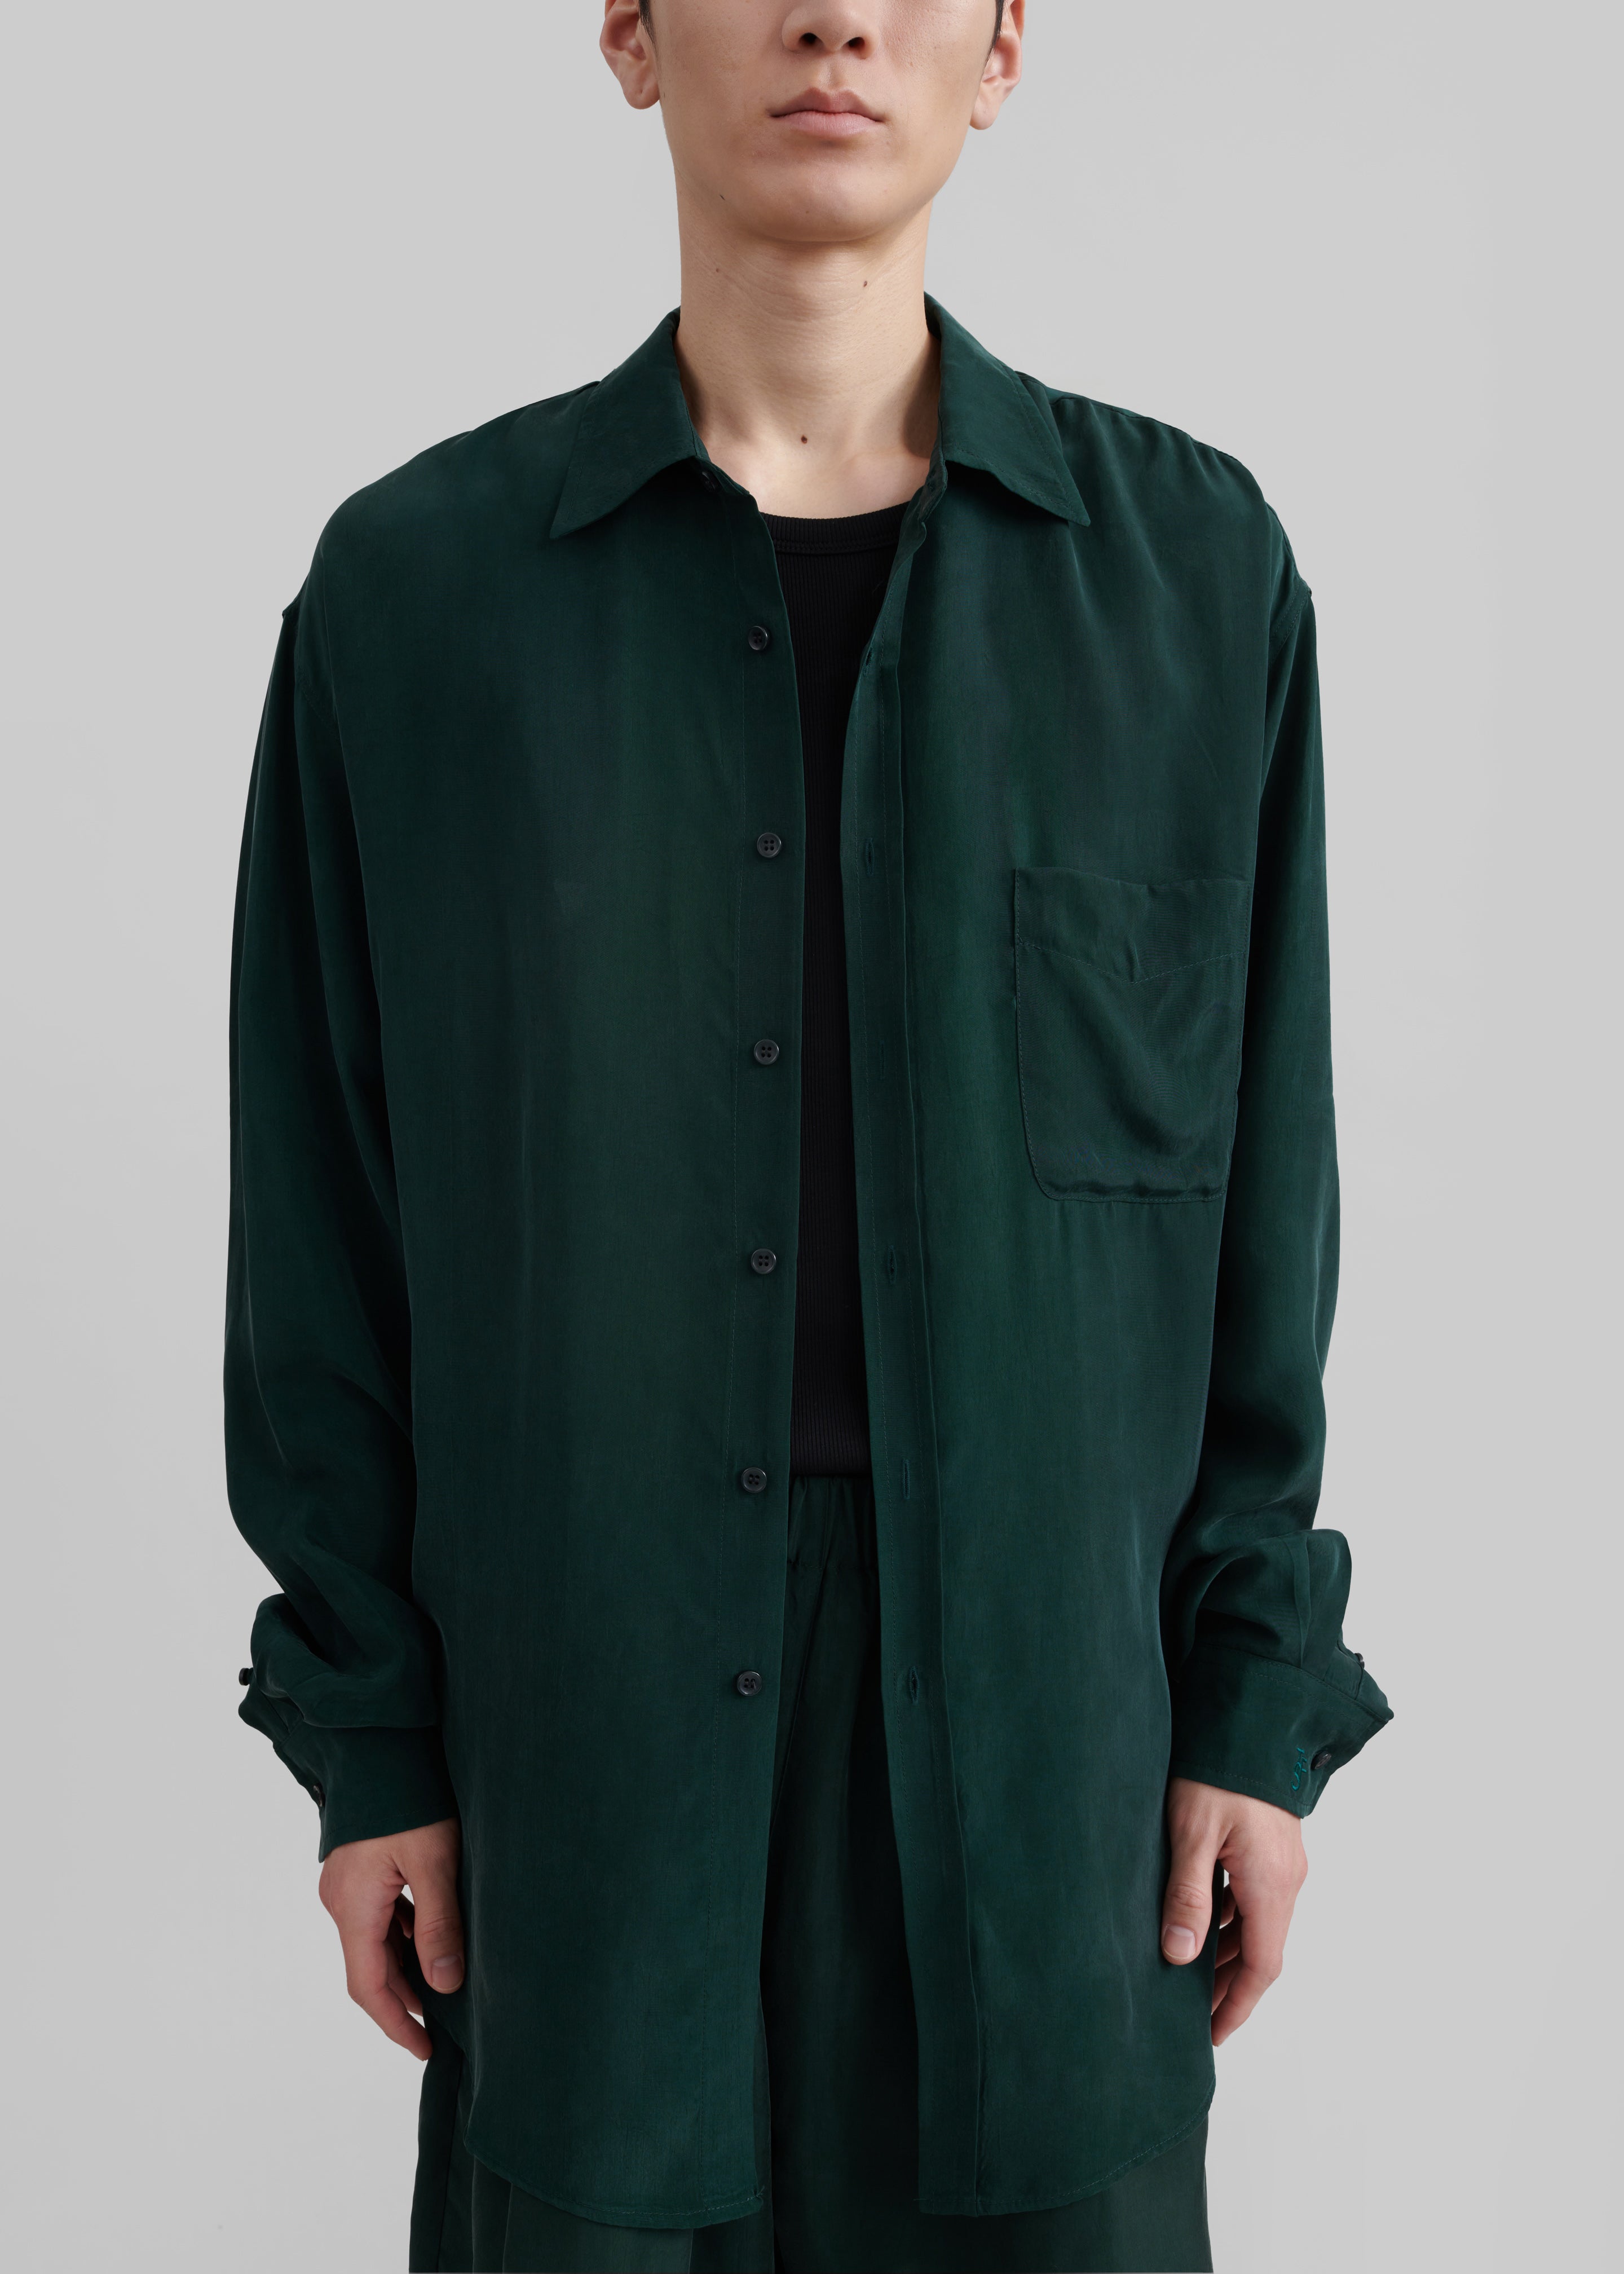 Leland Silky Shirt - Forest Green - 3